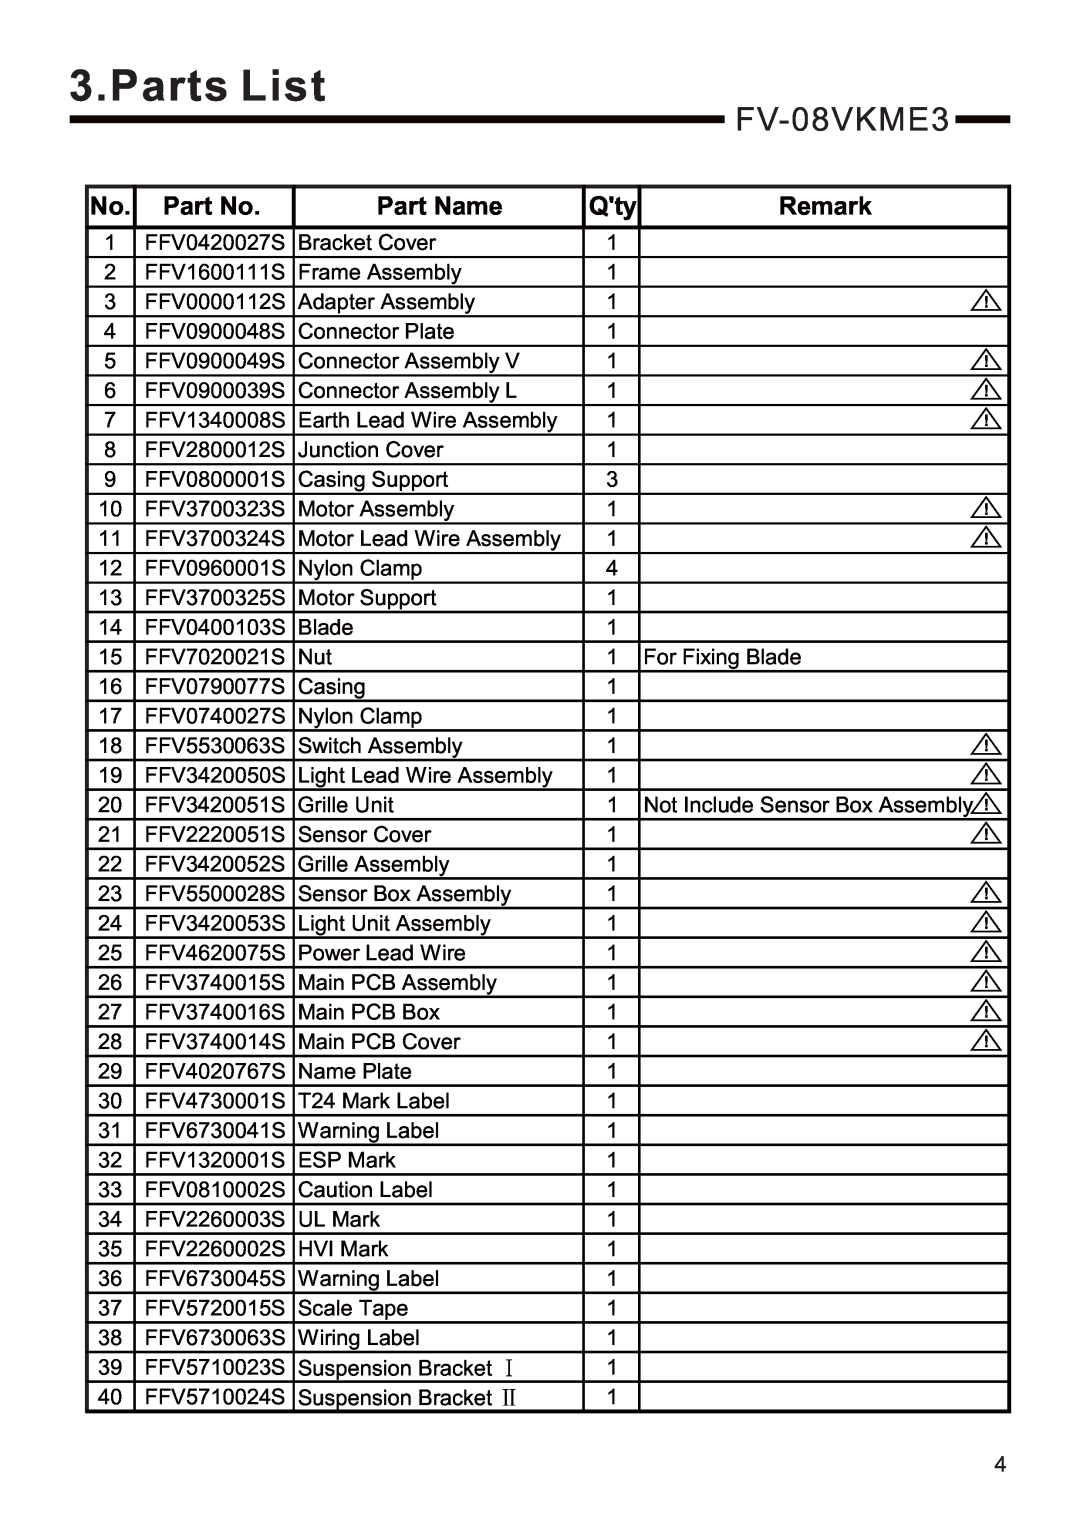 Panasonic FV-08VKME3, FV-08VKSE3 service manual Parts List, Part Name, Remark 